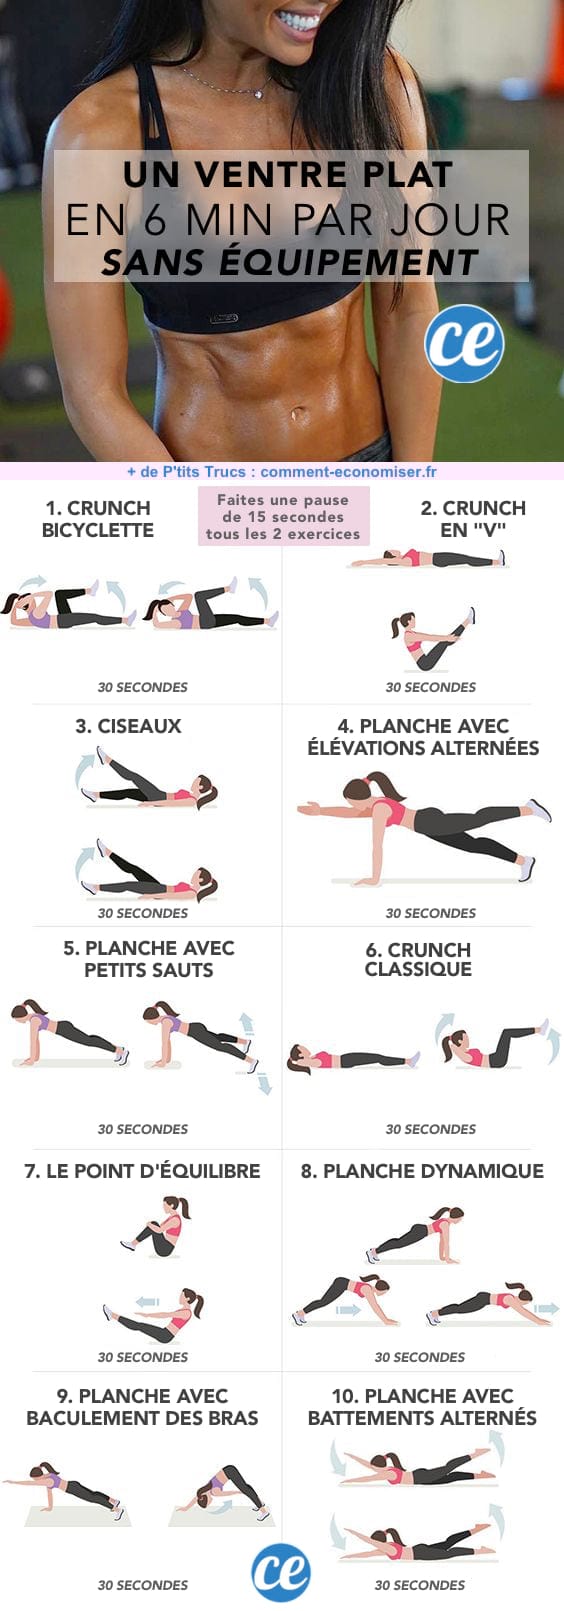 Aquí teniu la guia dels exercicis per esculpir els vostres abdominals i mantenir l'estómac pla.